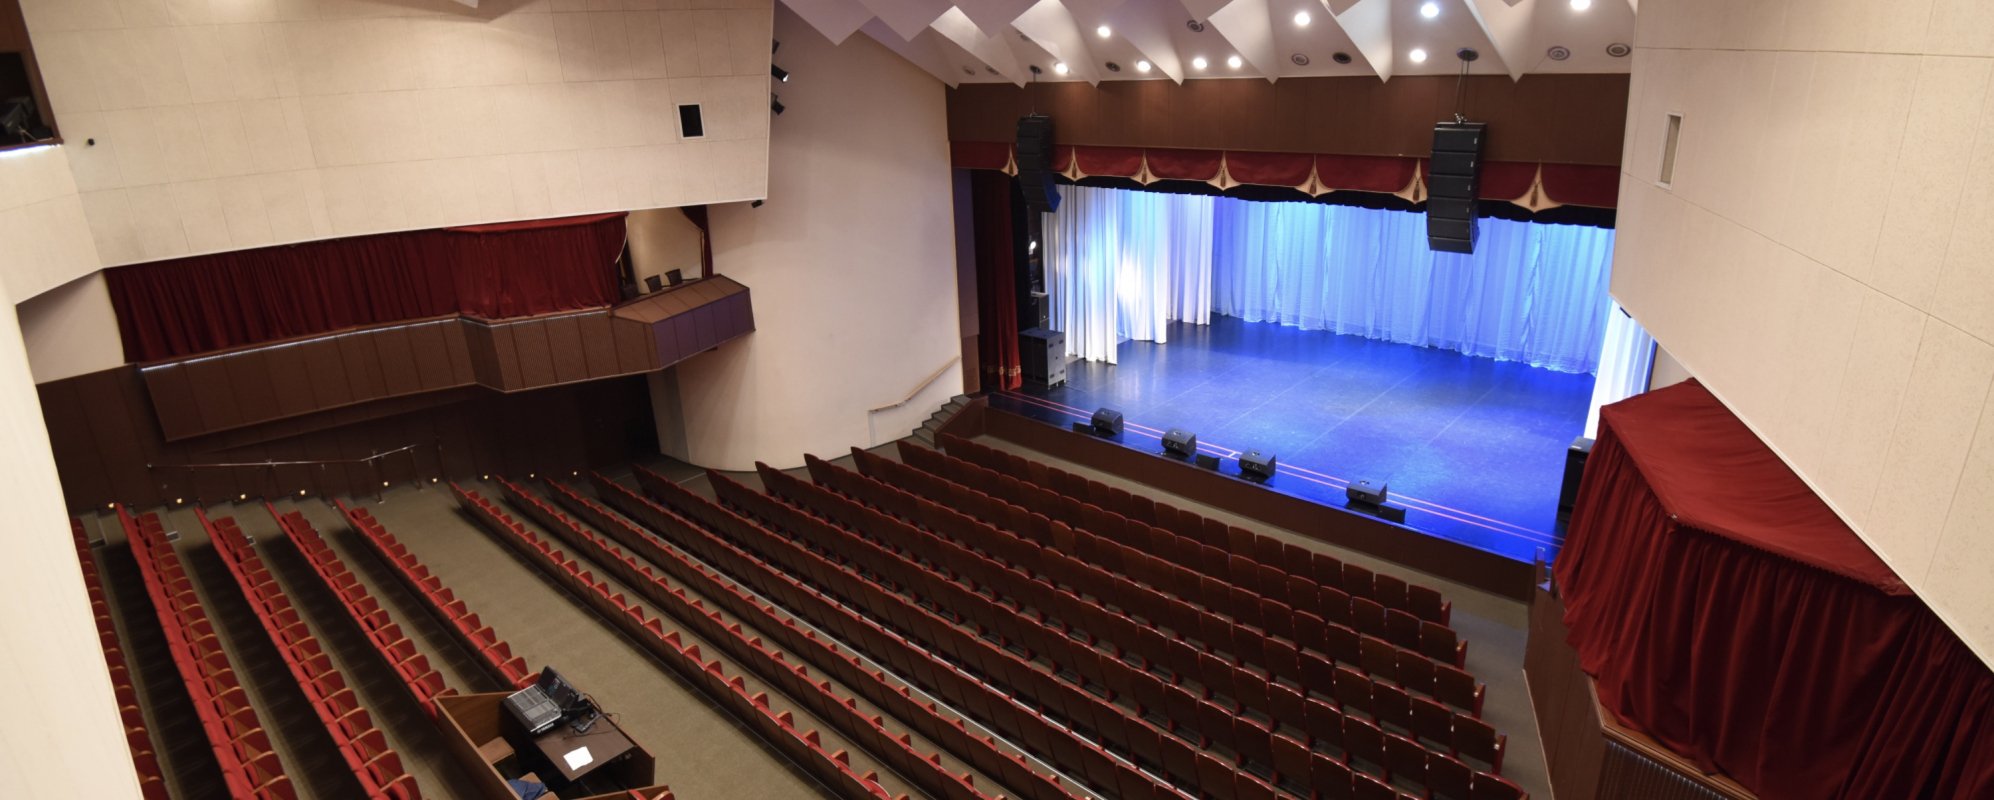 Фотографии концертного зала Большой зал ДК Аксион